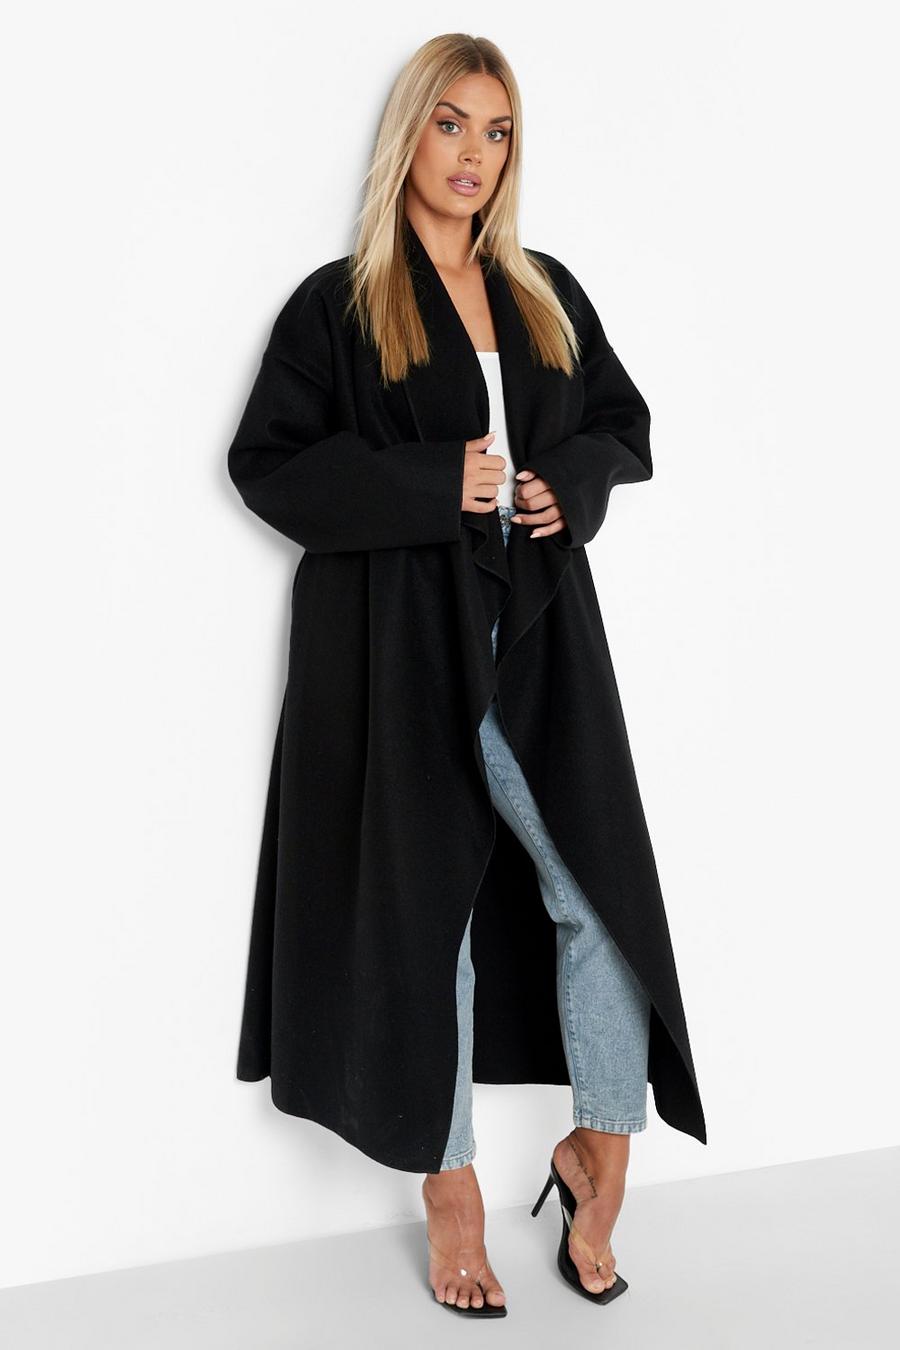 Plus Size Winter Coats